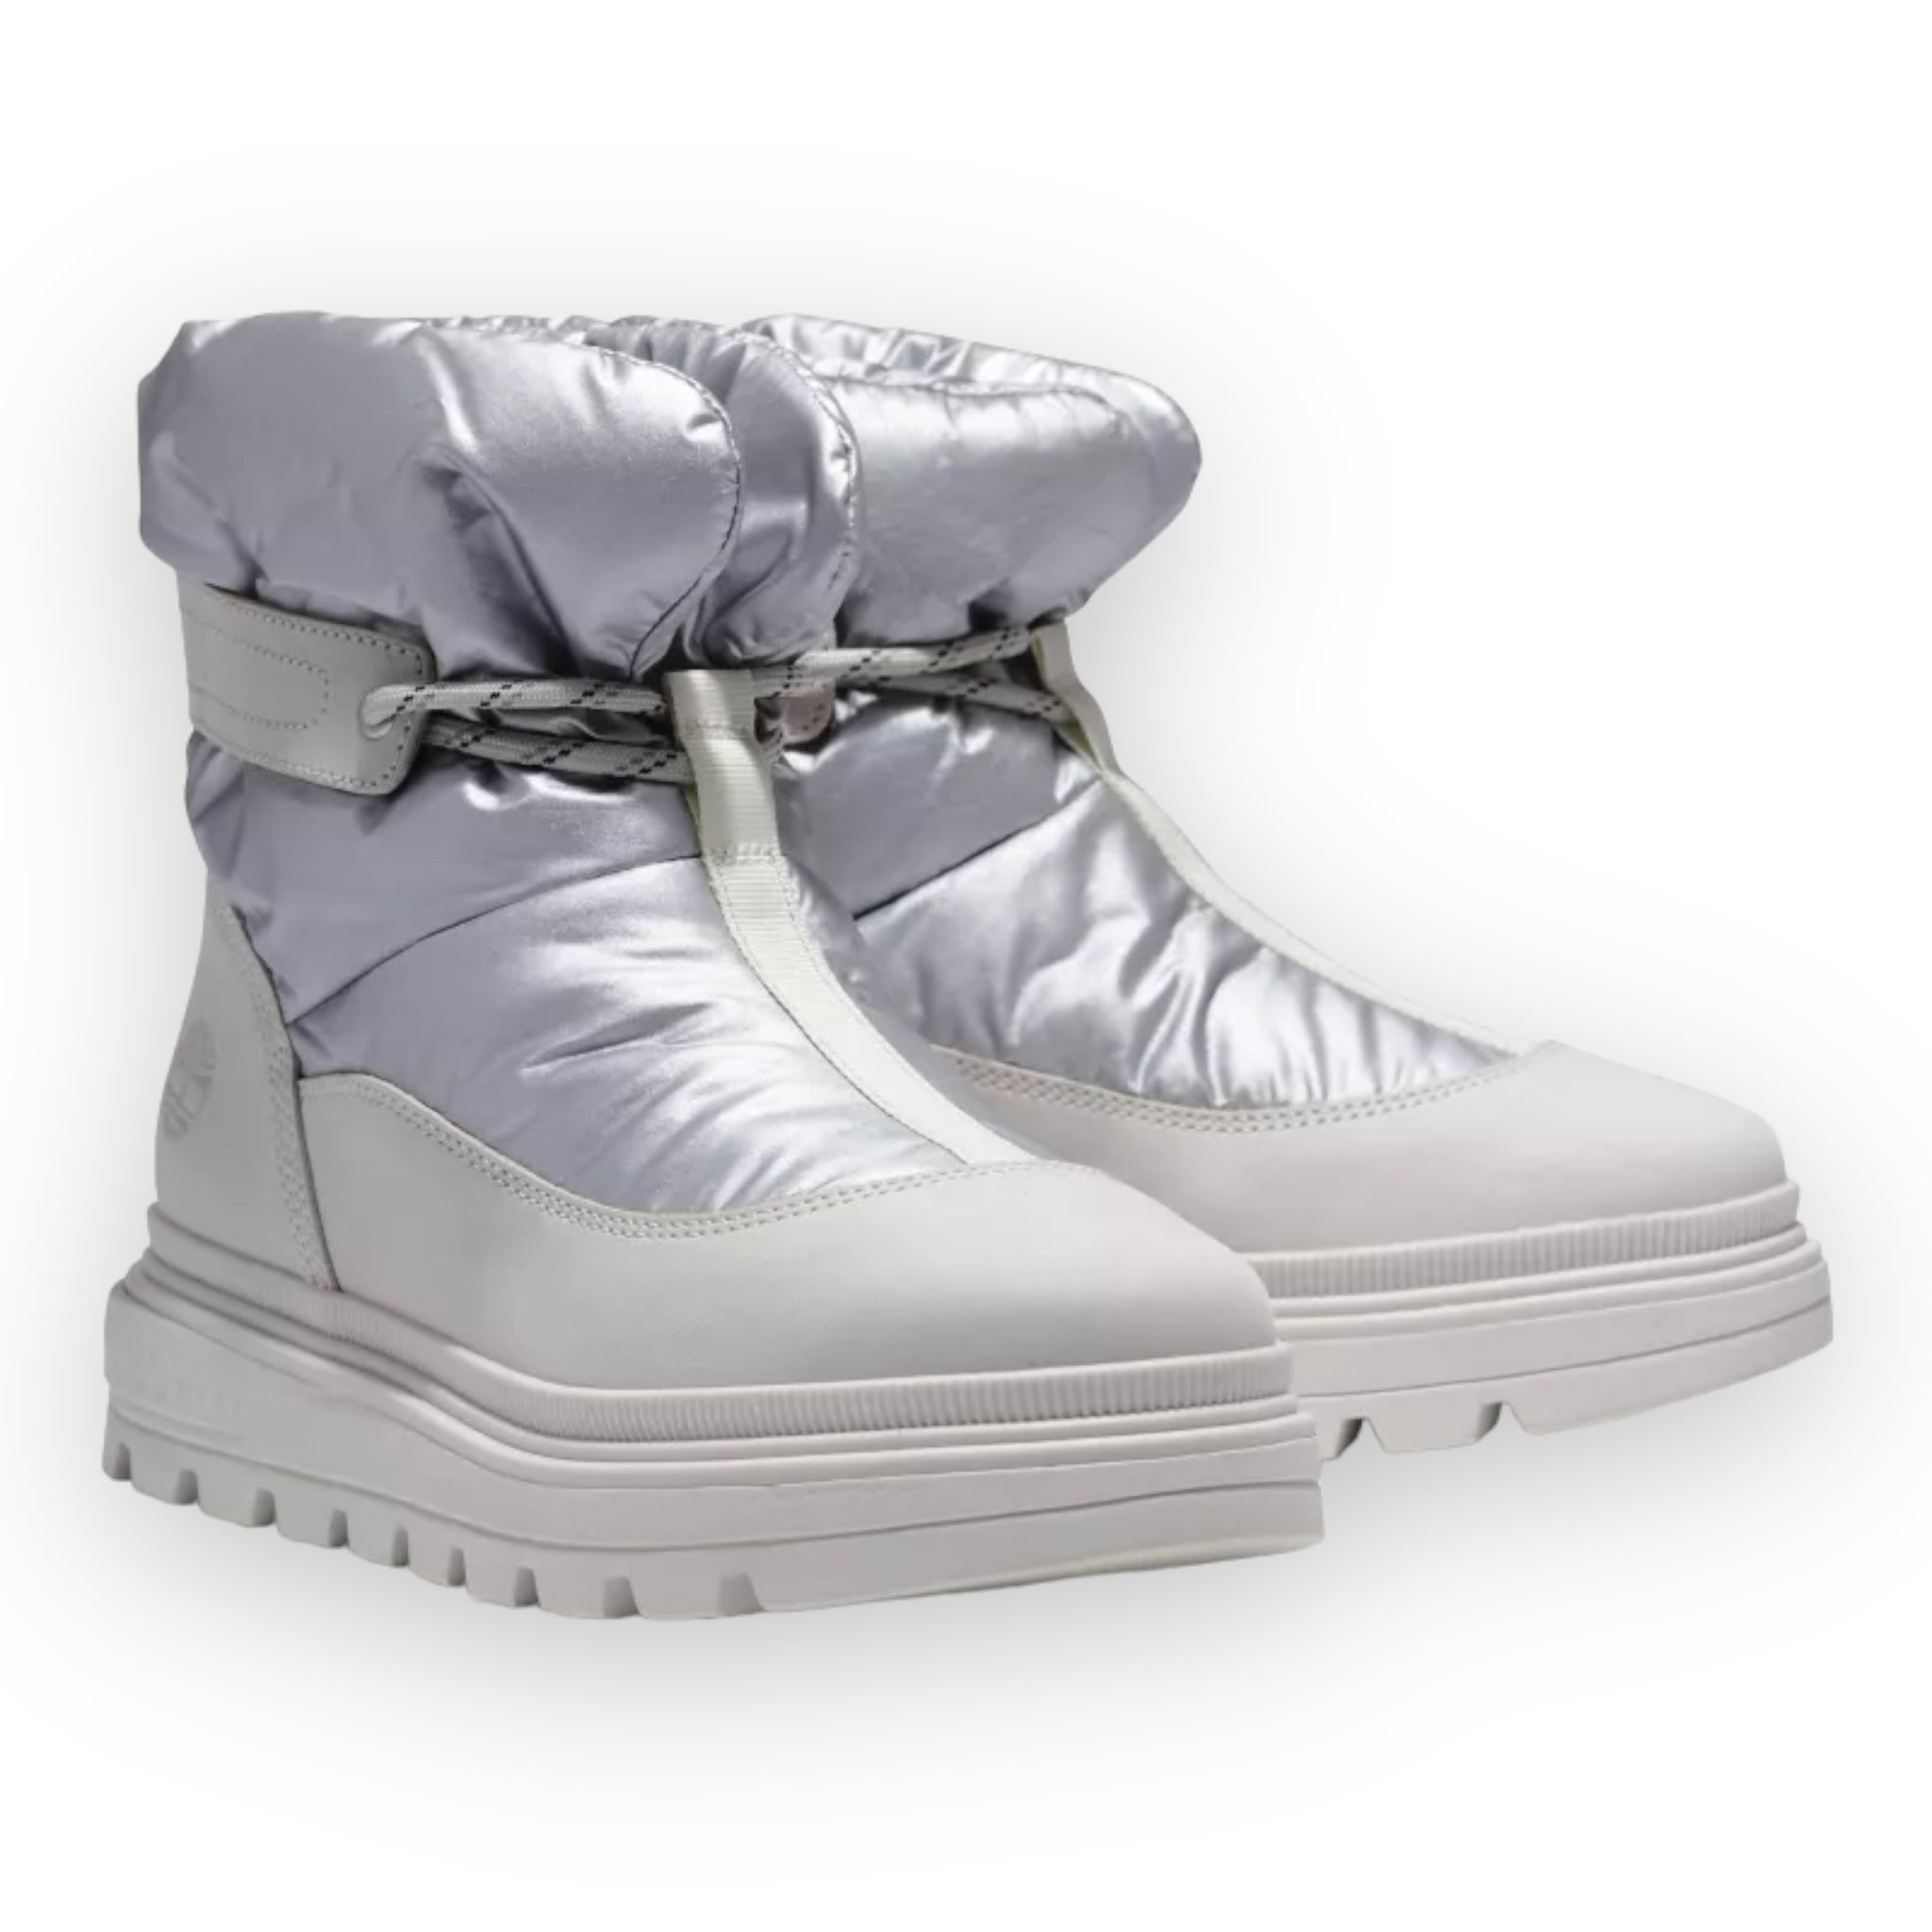 Timberland Womens Ray City Shoes - Size 9 - White Nubuck